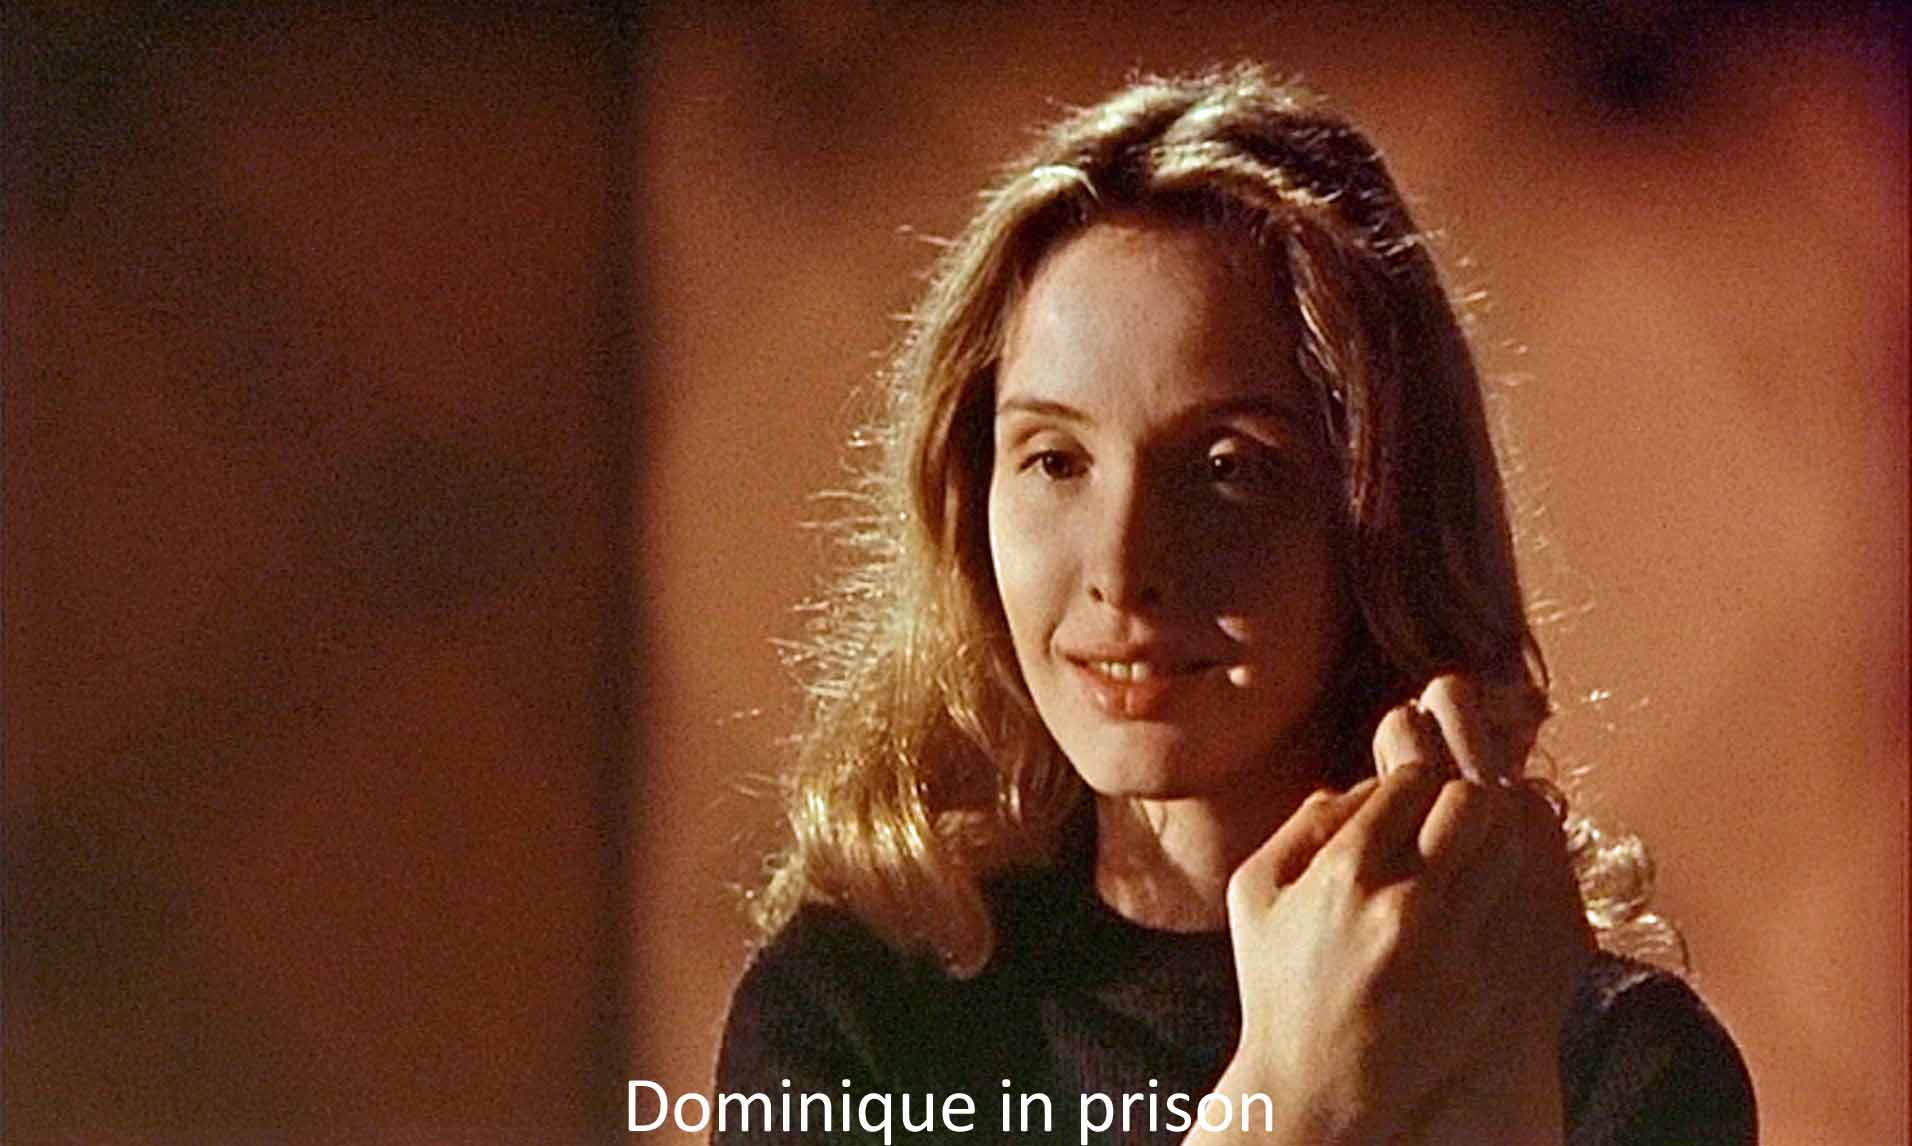 Dominique in prison